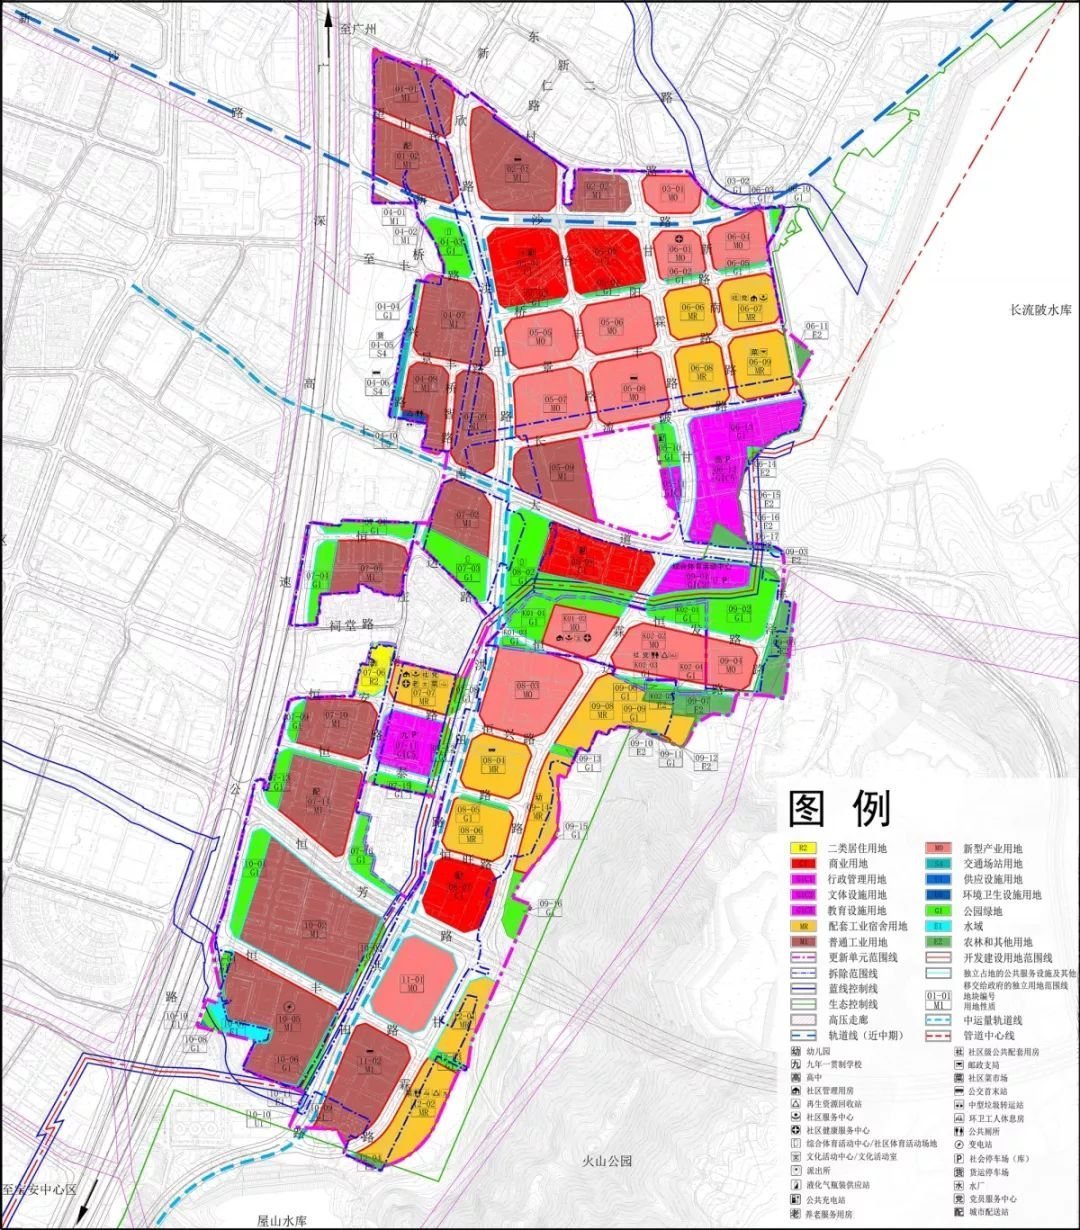 城市绿地规划结构图 - 仪陇新闻网